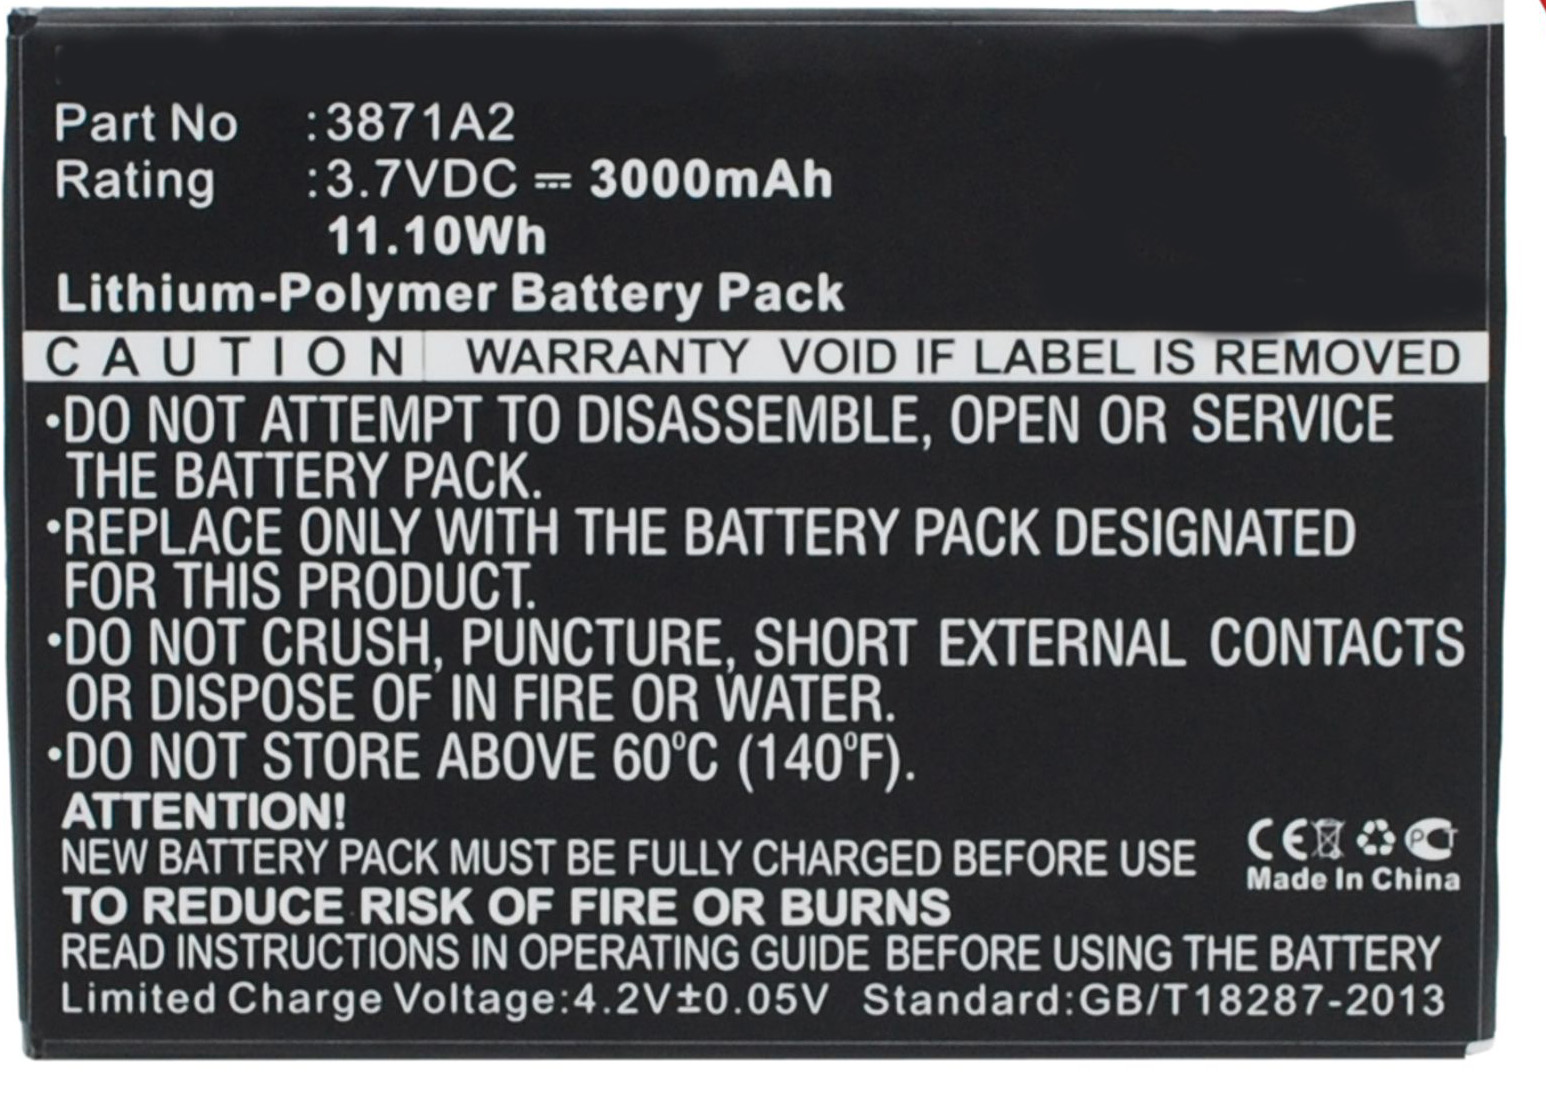 Batteries for PrestigioTablet